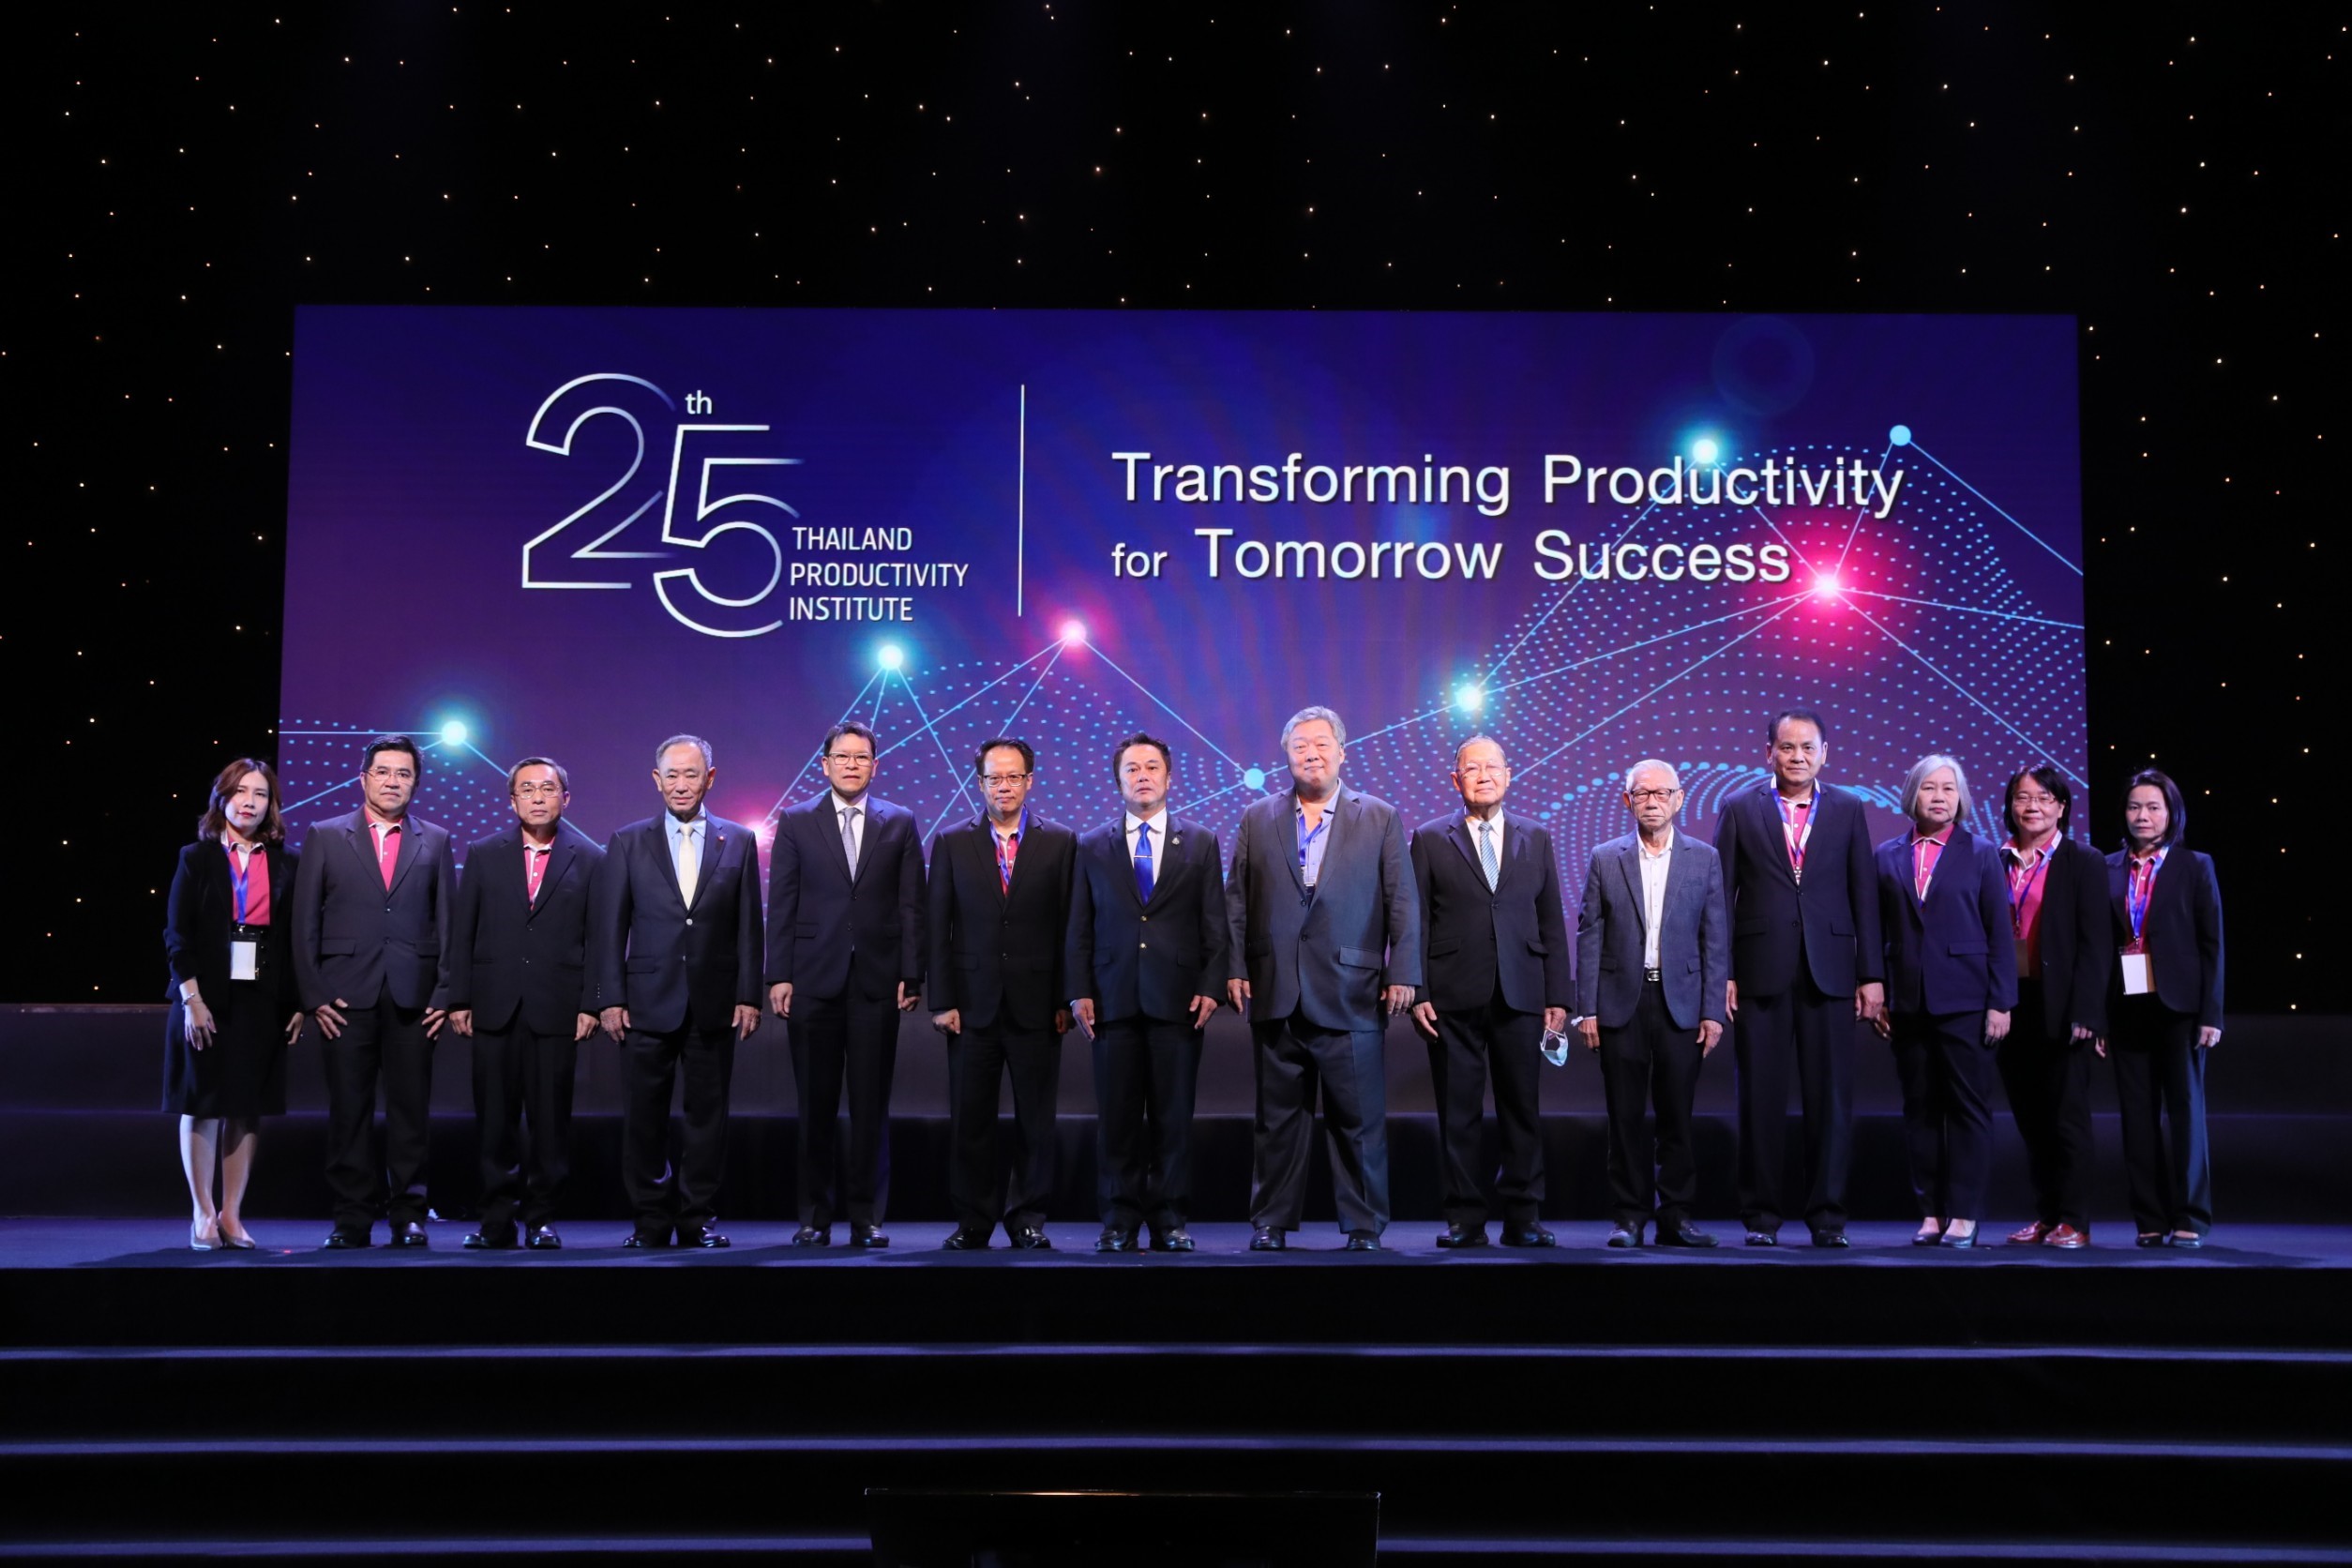 ภาพข่าว: สถาบันเพิ่มผลผลิตแห่งชาติ ครบรอบ 25 ปี ขับเคลื่อนผลิตภาพภาคอุตสาหกรรมไทย ชูแนวคิด Transforming Productivity for Tomorrow Success